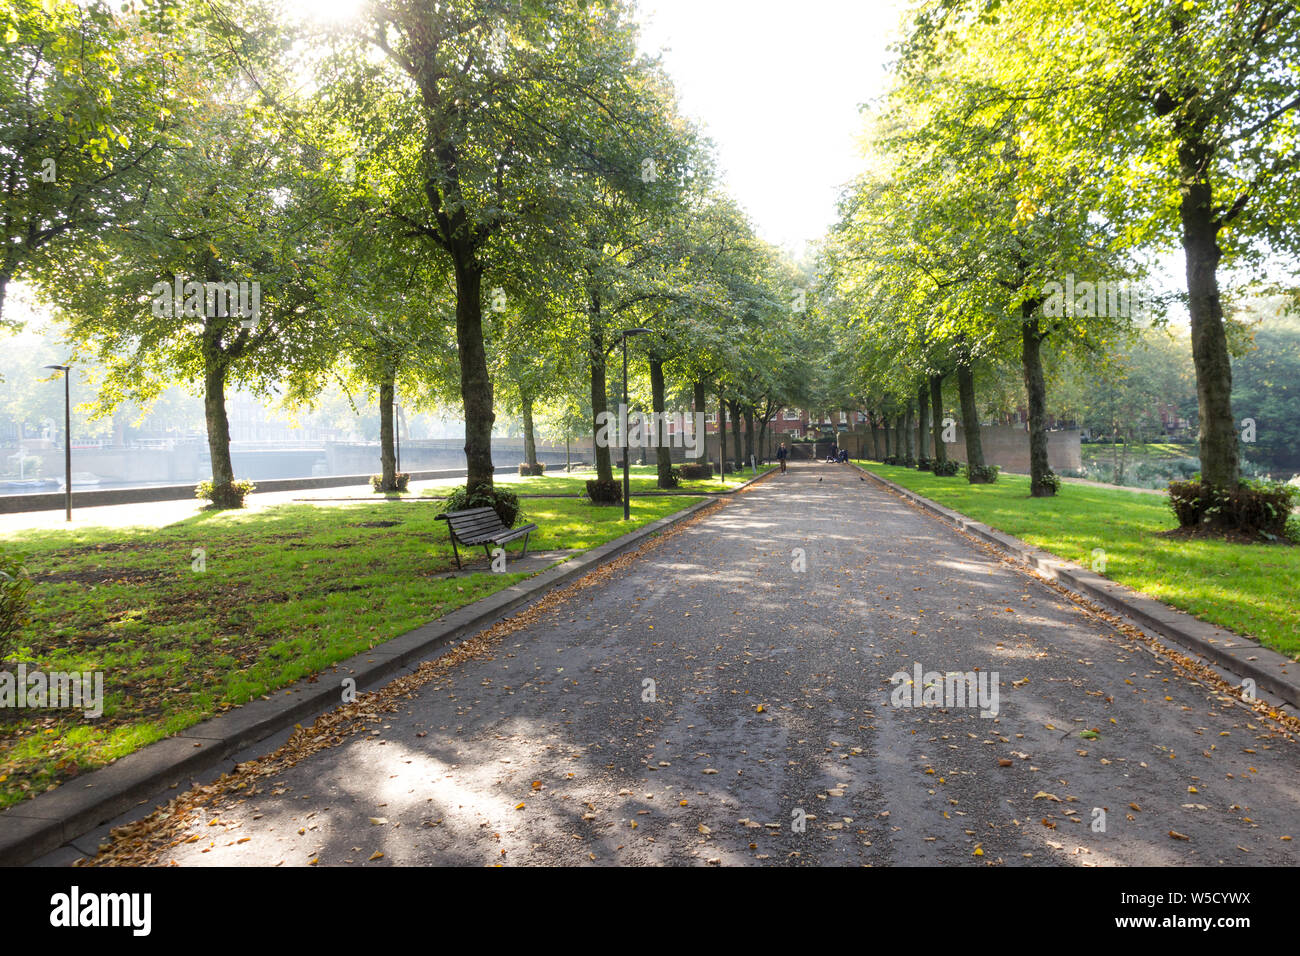 Passerelle piétonne à Amsterdam park Banque D'Images